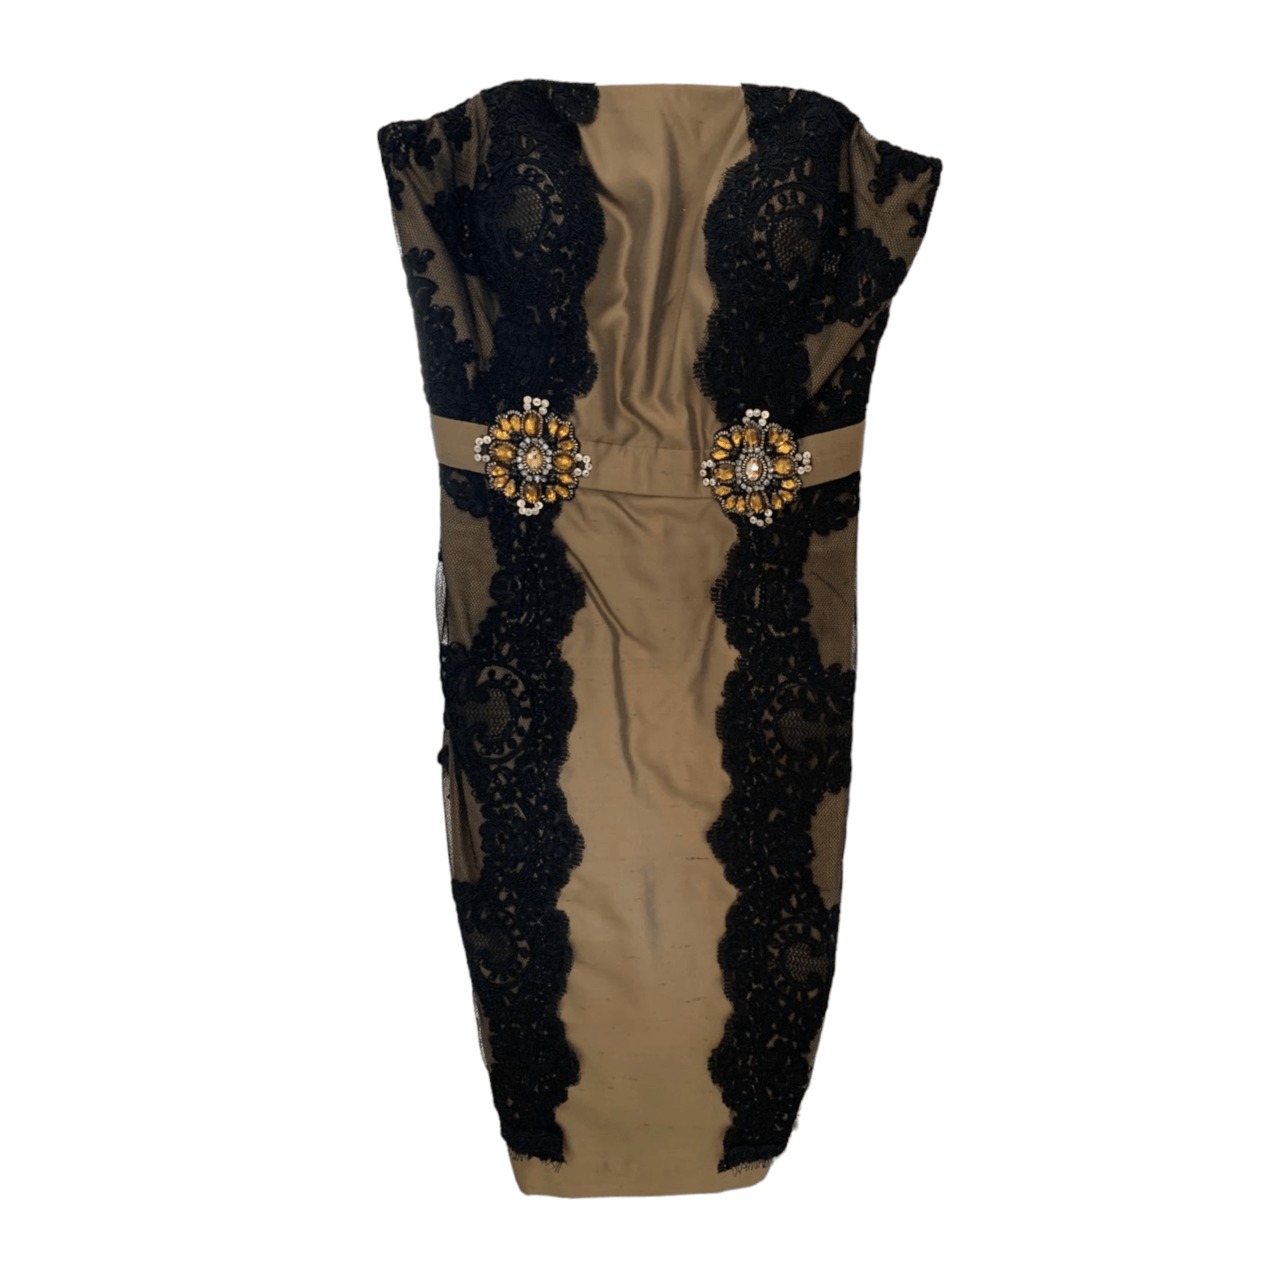 VOTUM By Sebastian & Cristina Gold & Black Midi Dress